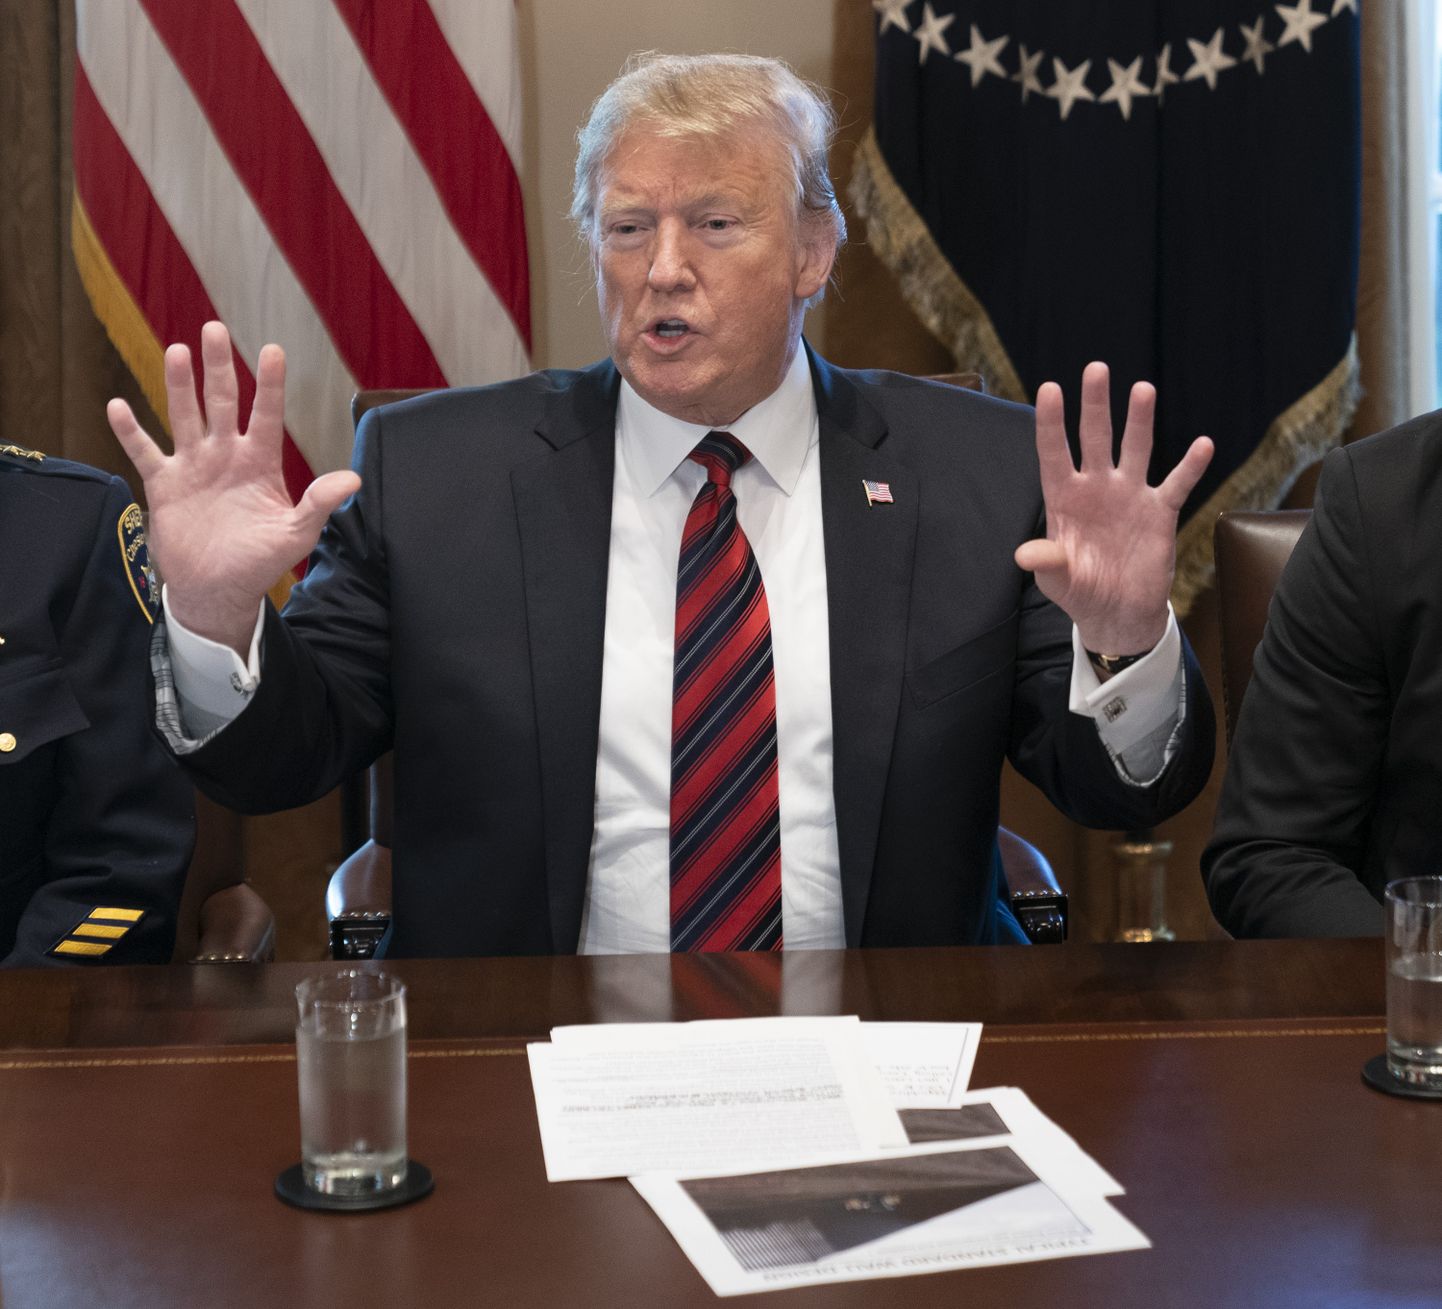 Donald Trump 11. jaanuaril 2019 Valges Majas julgeoleku ümarlaual